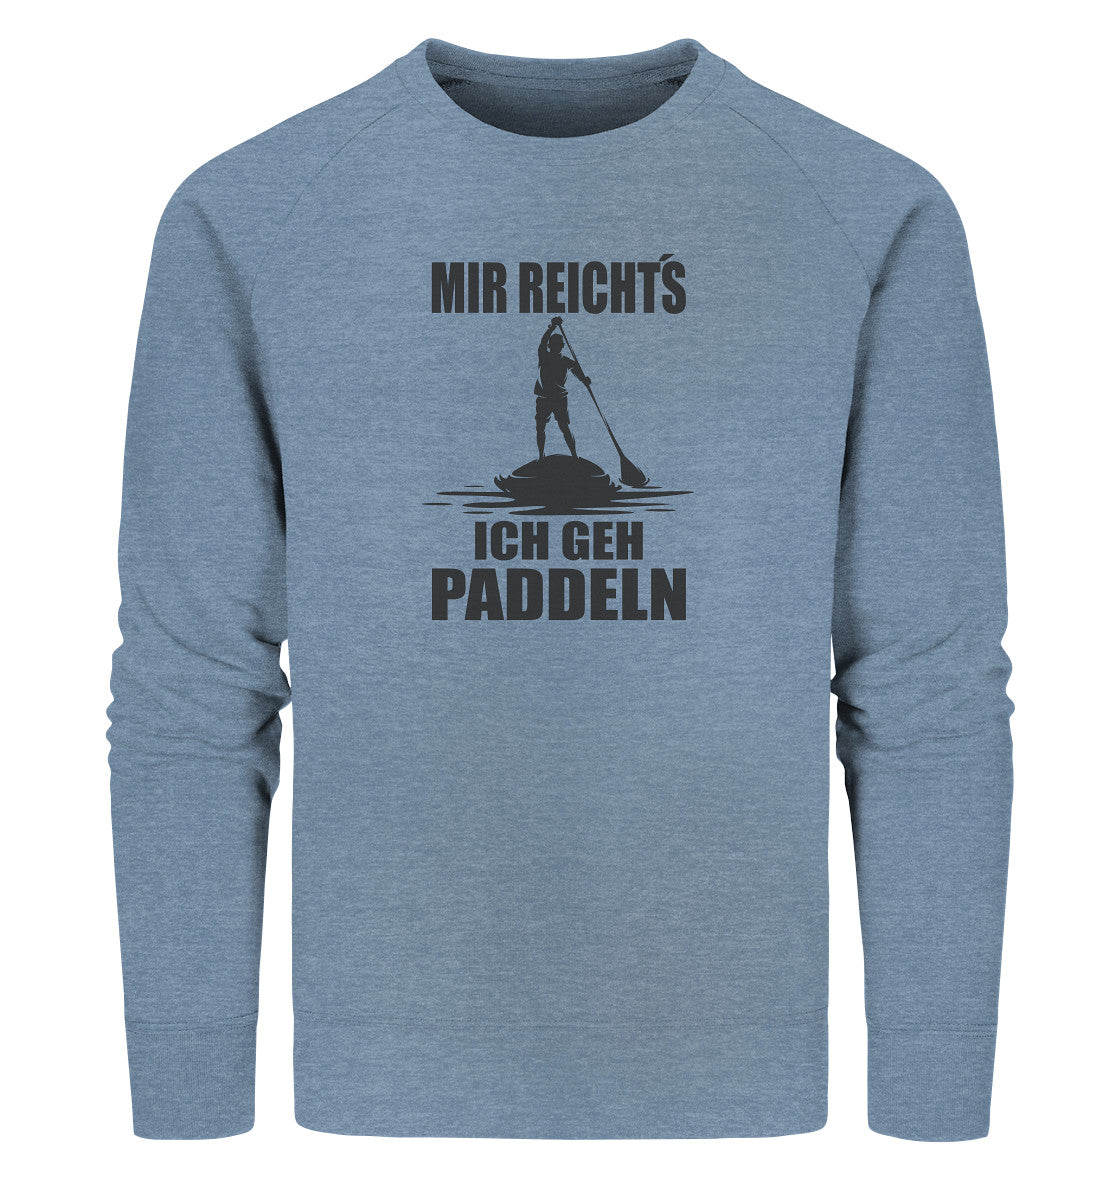 MIR REICHT´S - ICH GEH PADDELN - Organic Sweatshirt